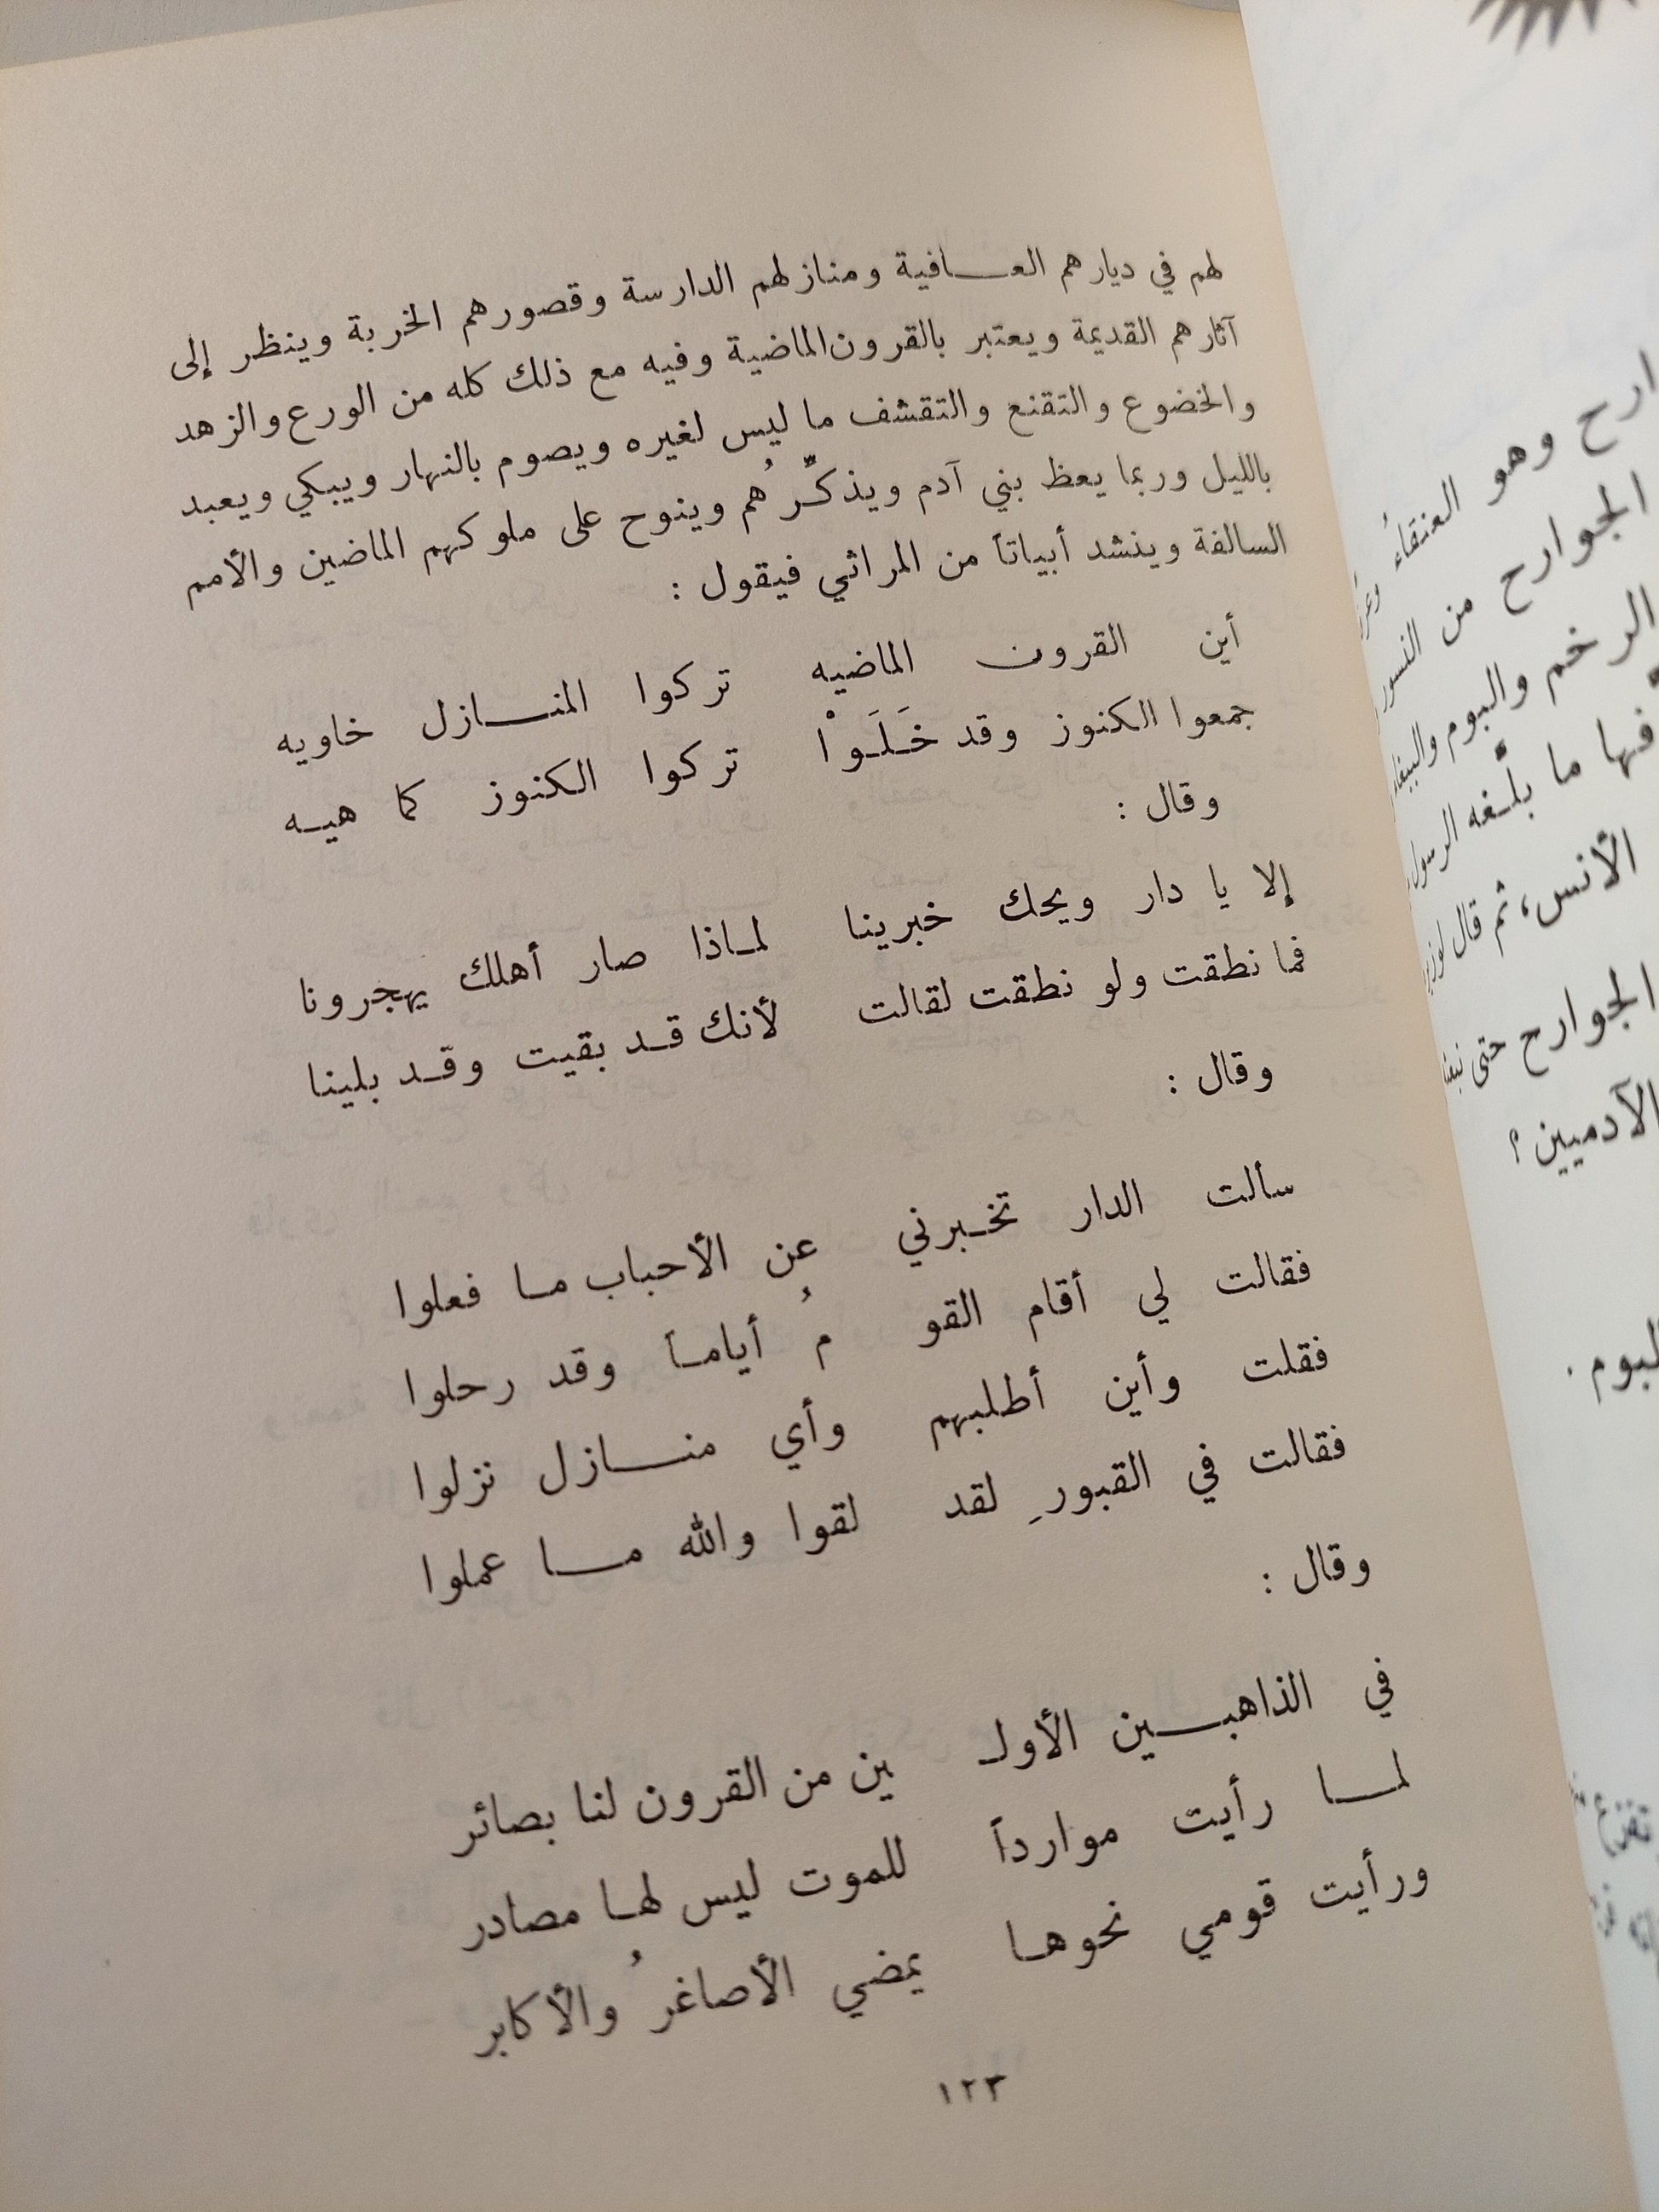 رسالة تداعي الحيوانات علي الانسان / إخوان الصفا ط2 كتاب المكتبة الفلسفية 